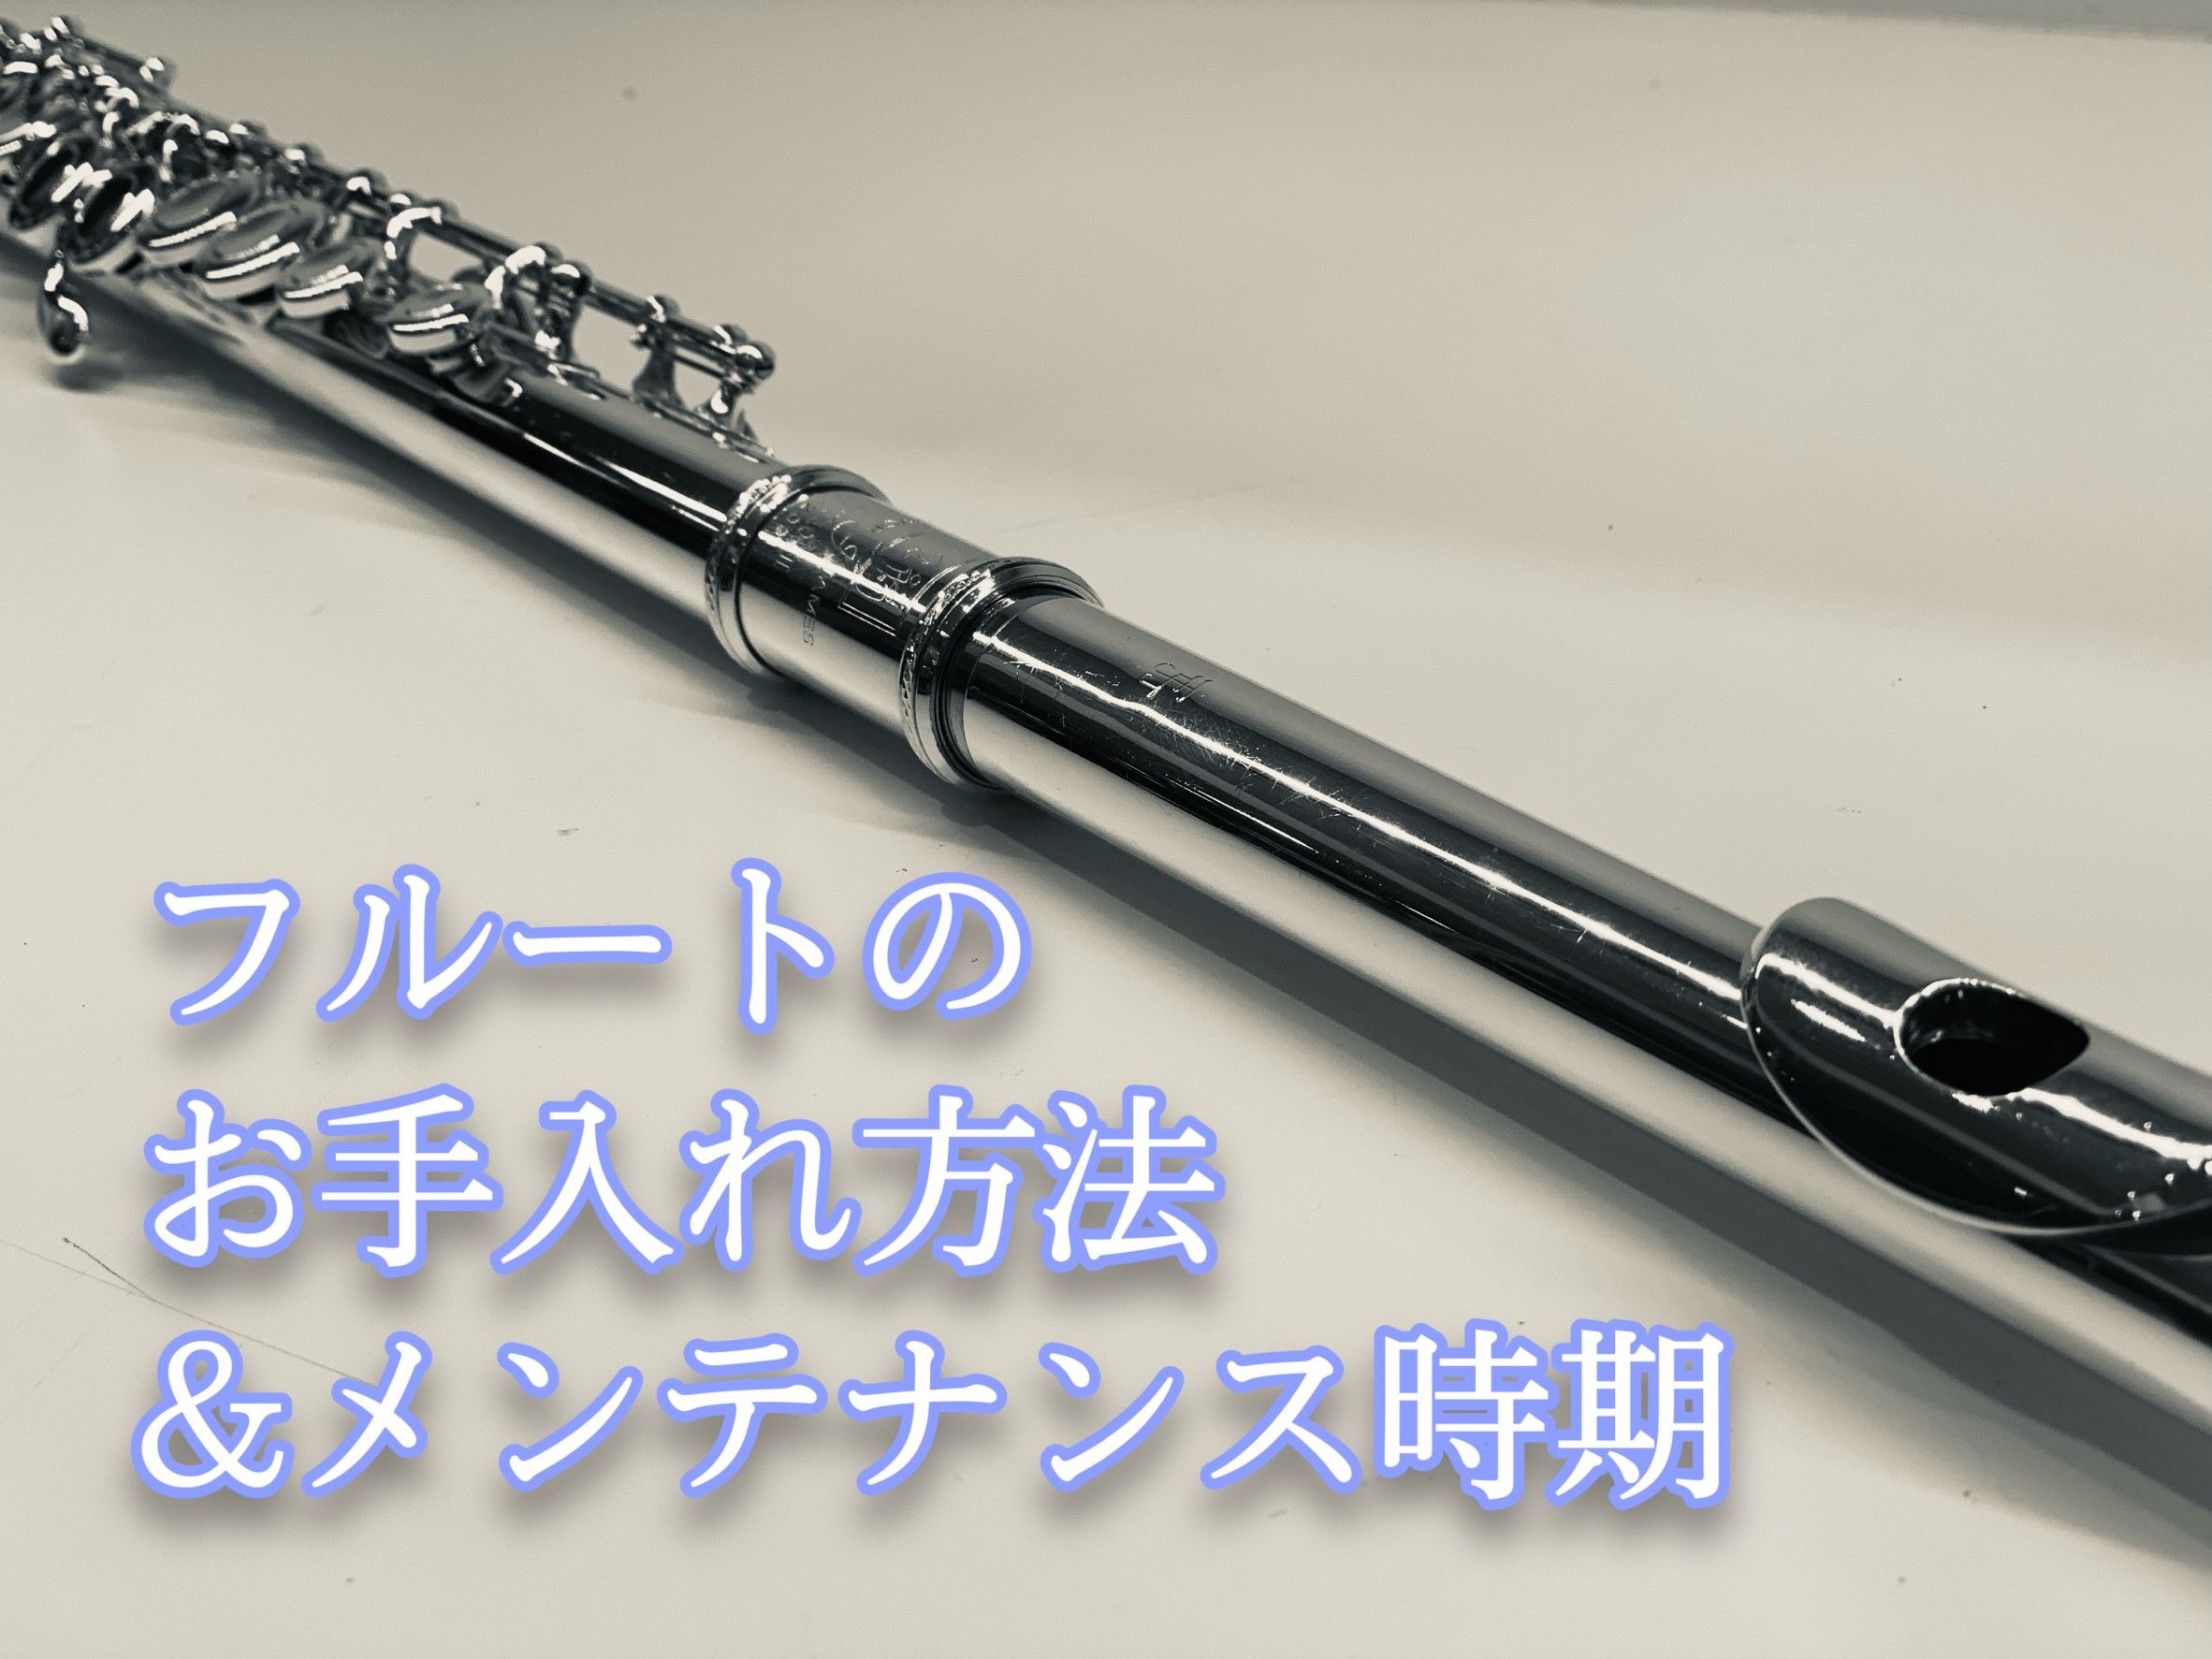 こんにちは。[https://www.shimamura.co.jp/shop/kasai/instructor/20210417/170:title=フルートインストラクターの辻]です！ 楽器をより長く使用するために日頃のお手入れや定期的なメンテナンスがとても重要となります！]]普段のお手入れ～定 […]